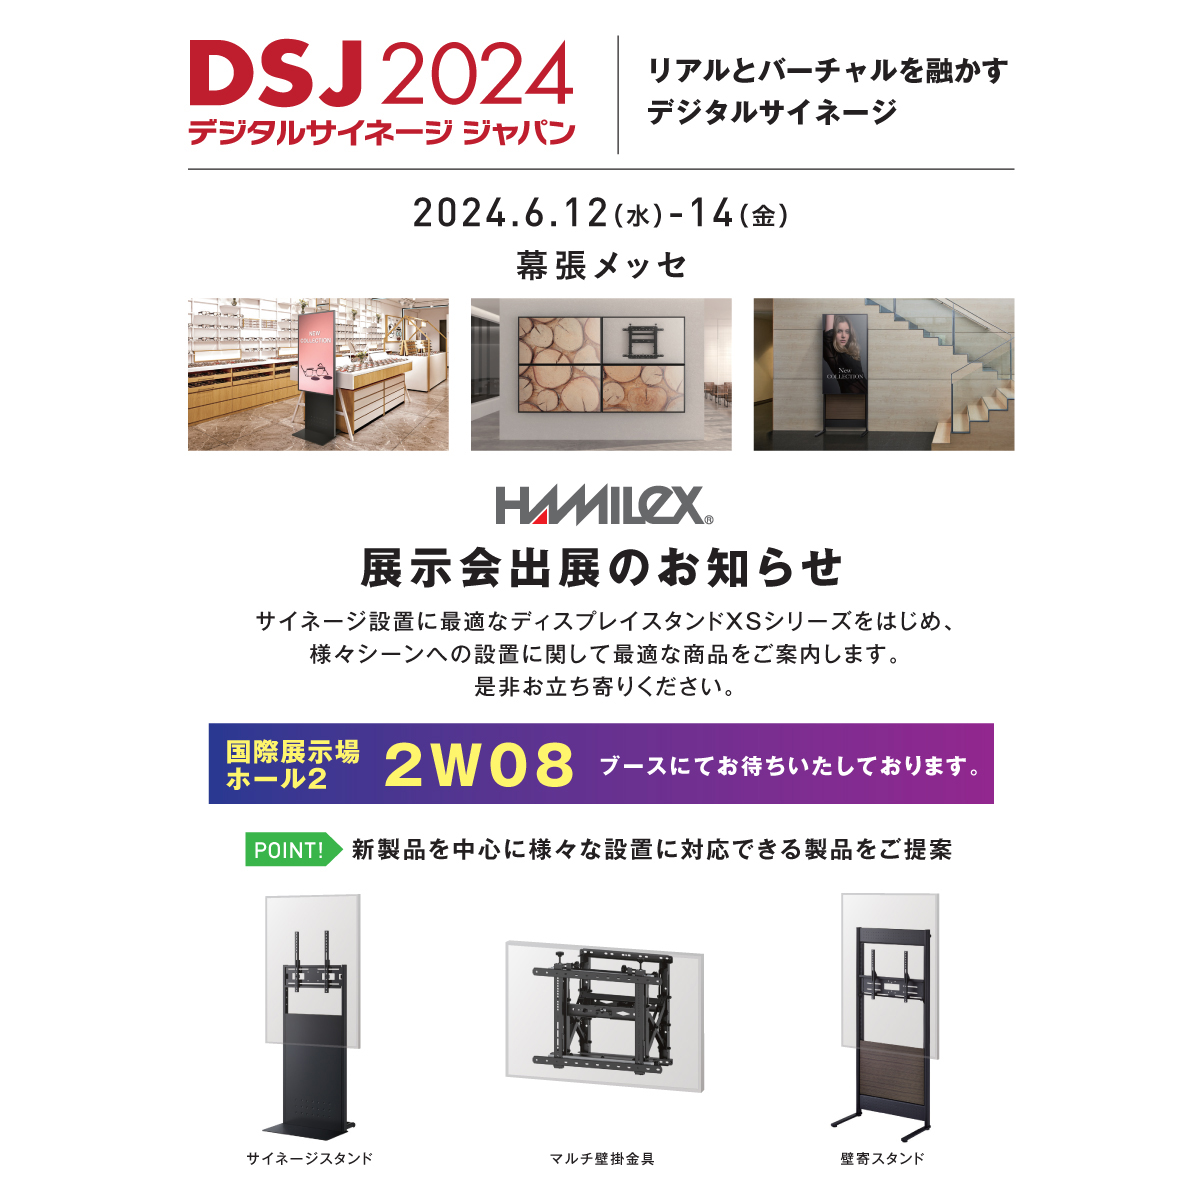 『デジタルサイネージ ジャパン（DSJ） 2024』に出展いたします